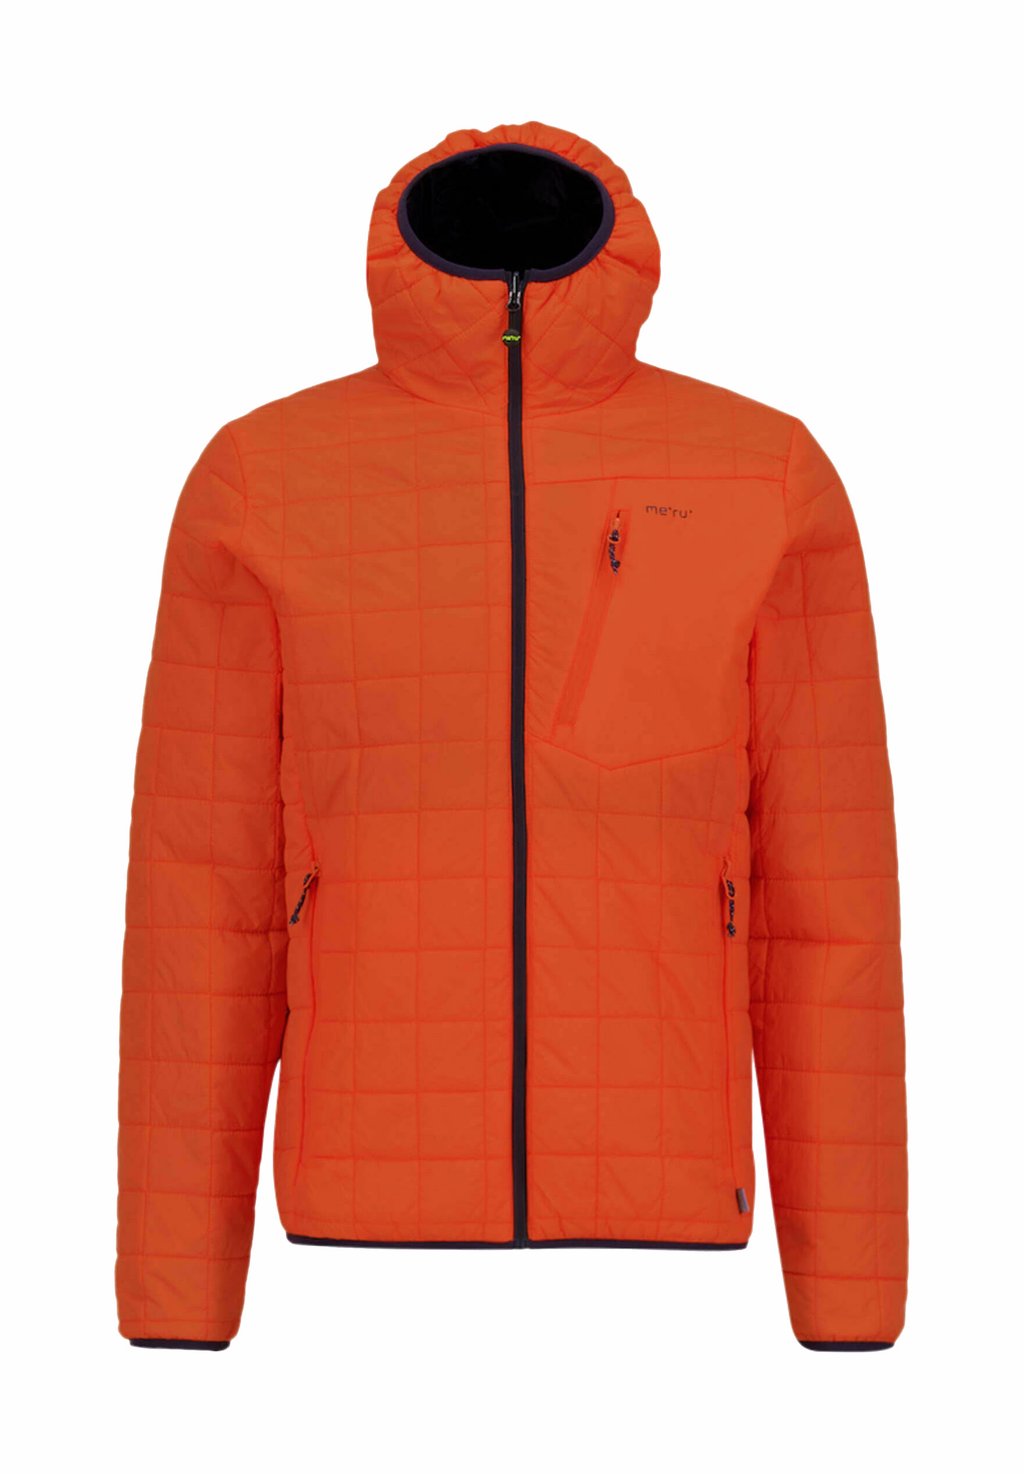 Куртка Meru, оранжевый цена и фото